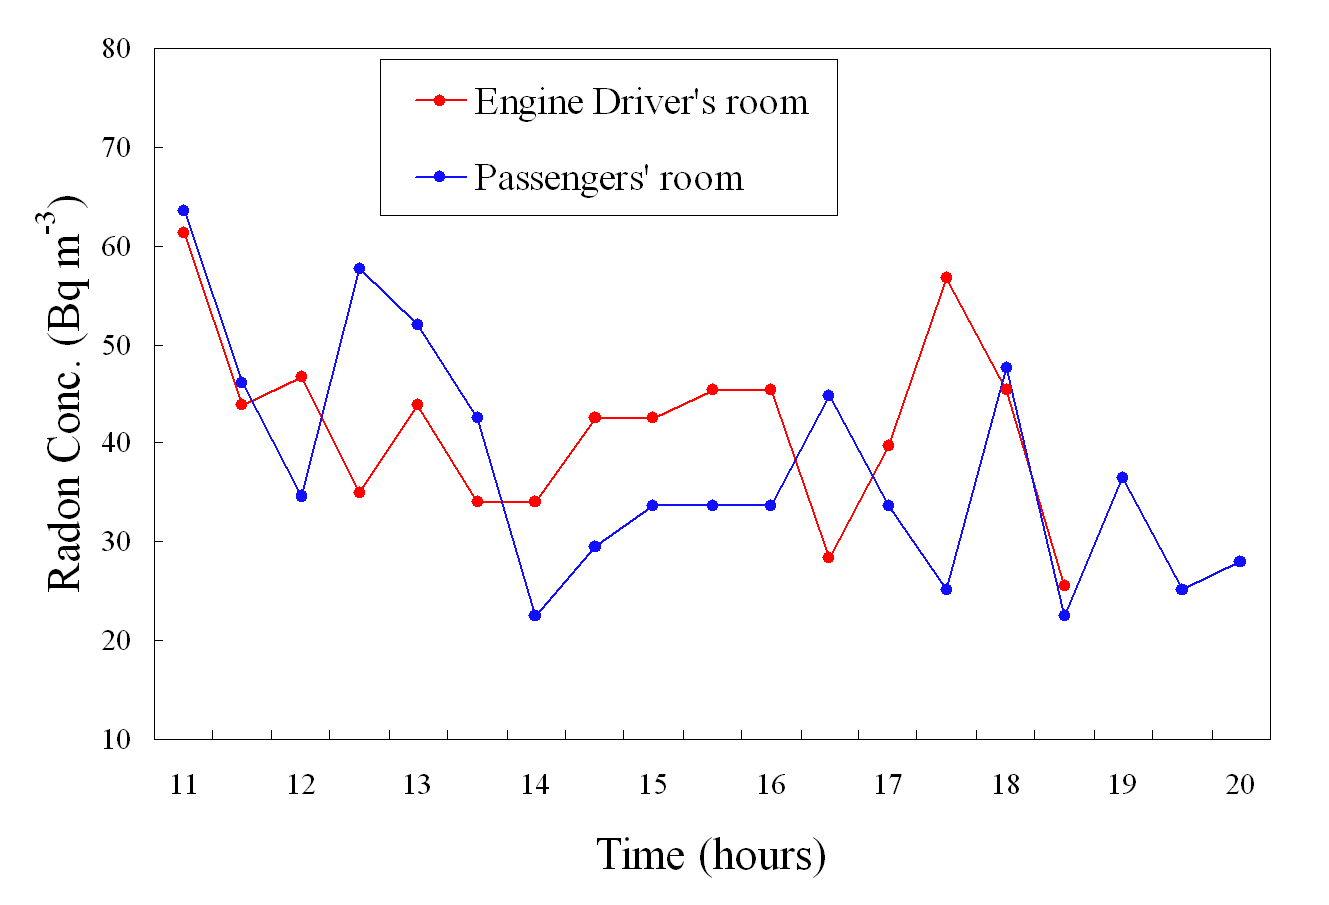 그림 7. 열차(운전실과 객실)에 대한 시간별 라돈 농도 변화